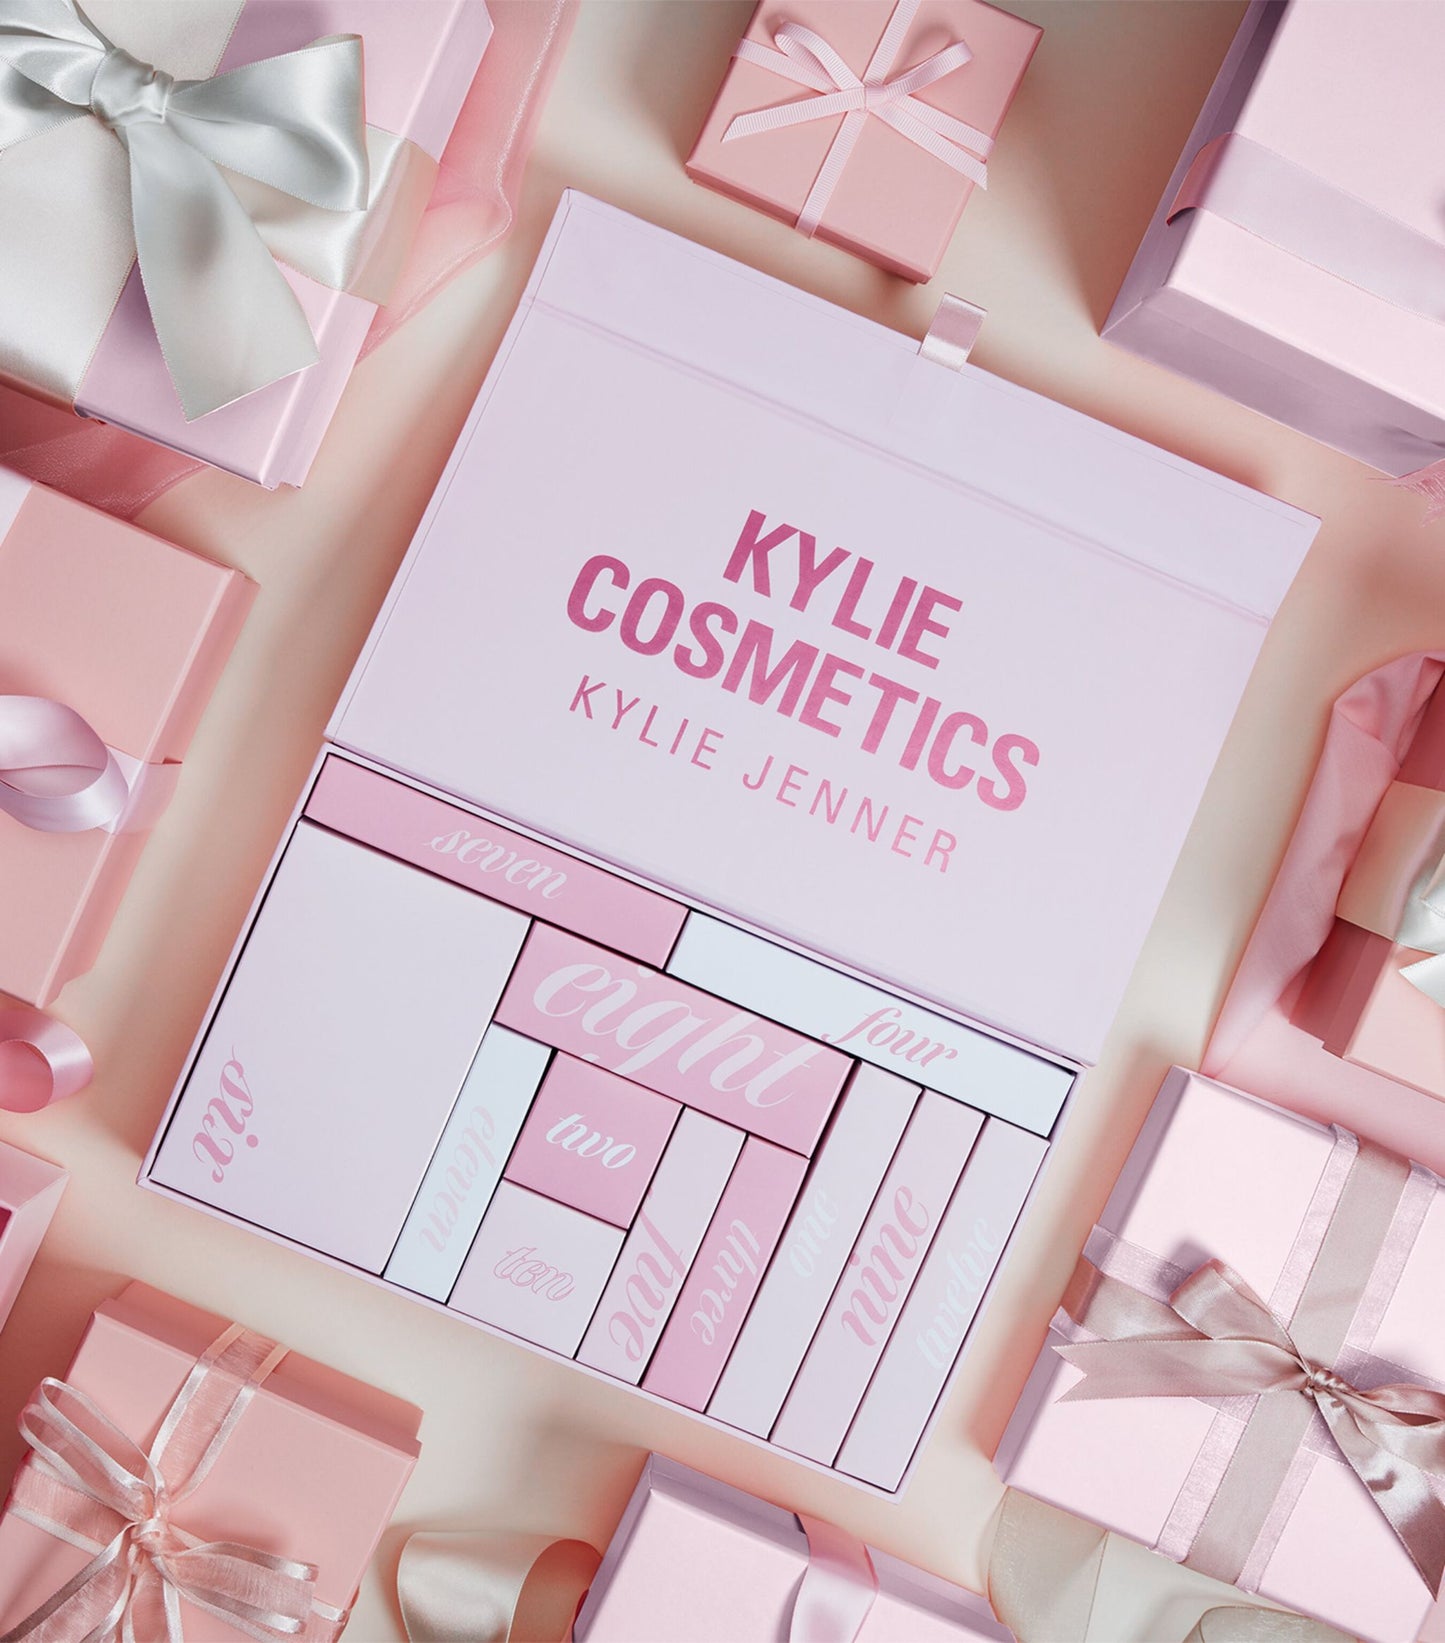 KYLIE COSMETICS, Twelve Days of Kylie Beauty Advent Calendar